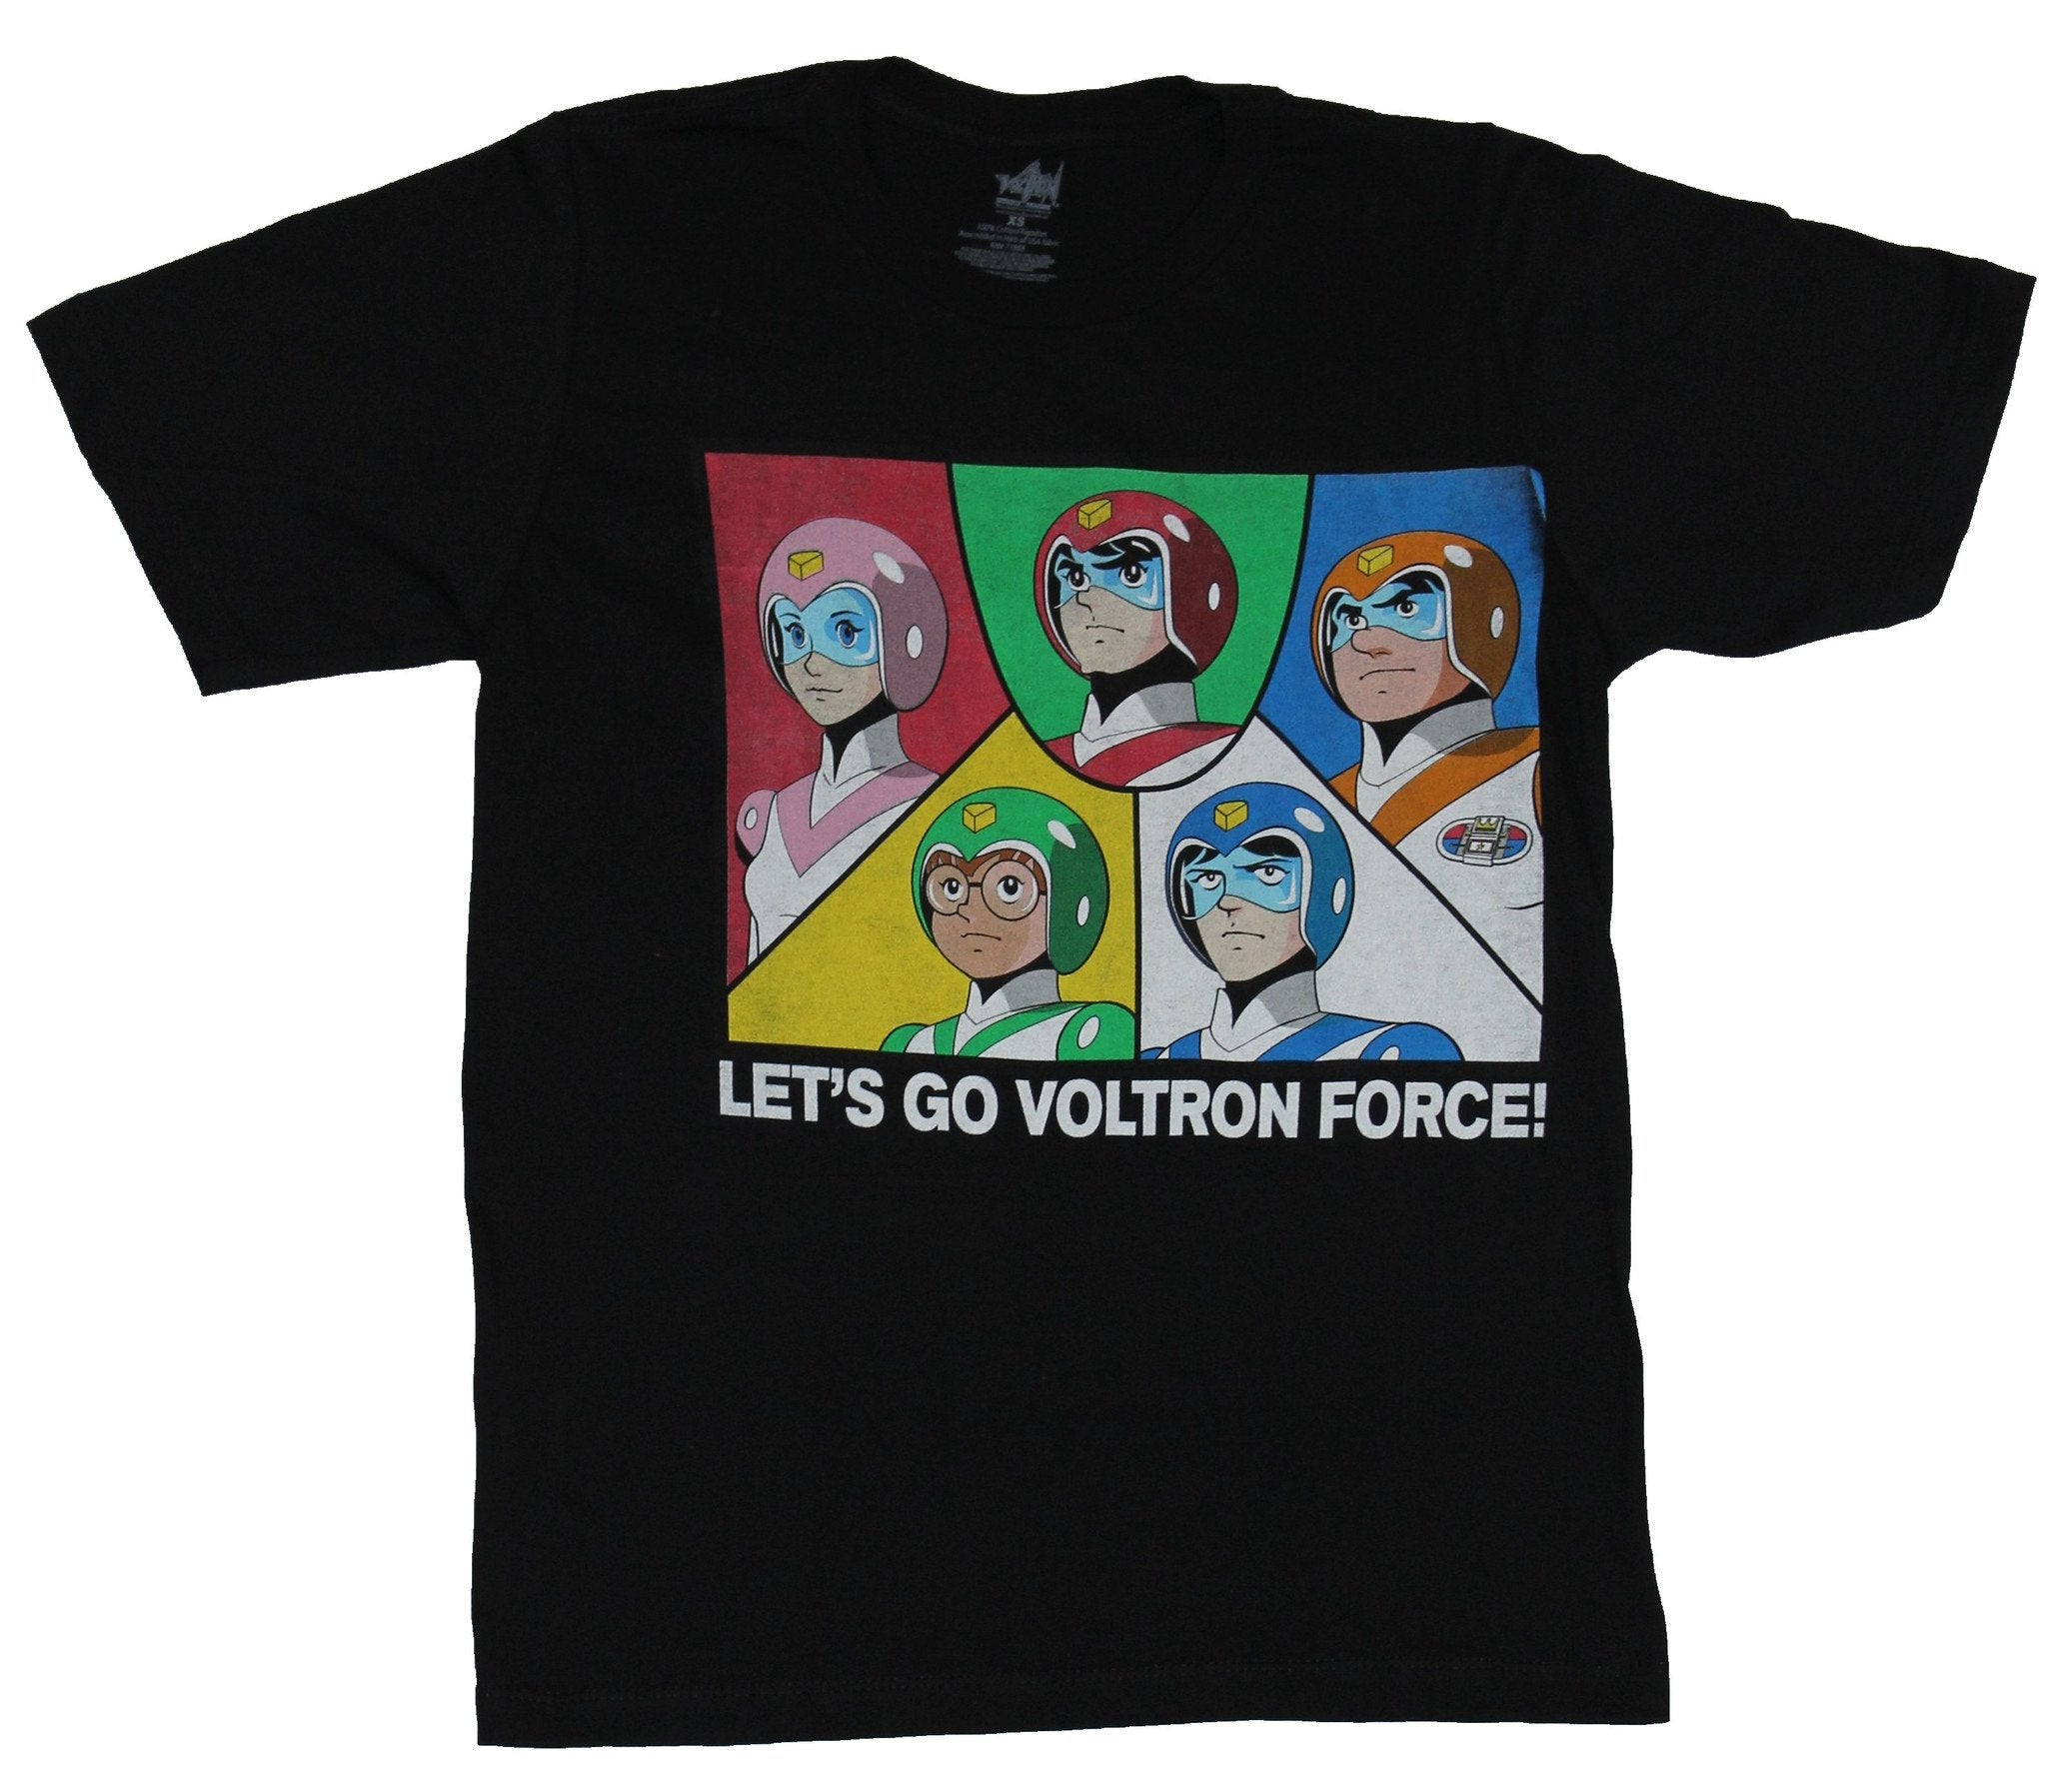 Voltron Mens T-Shirt - Let's Go Voltron Force! 5 Part Team Getting battle Ready